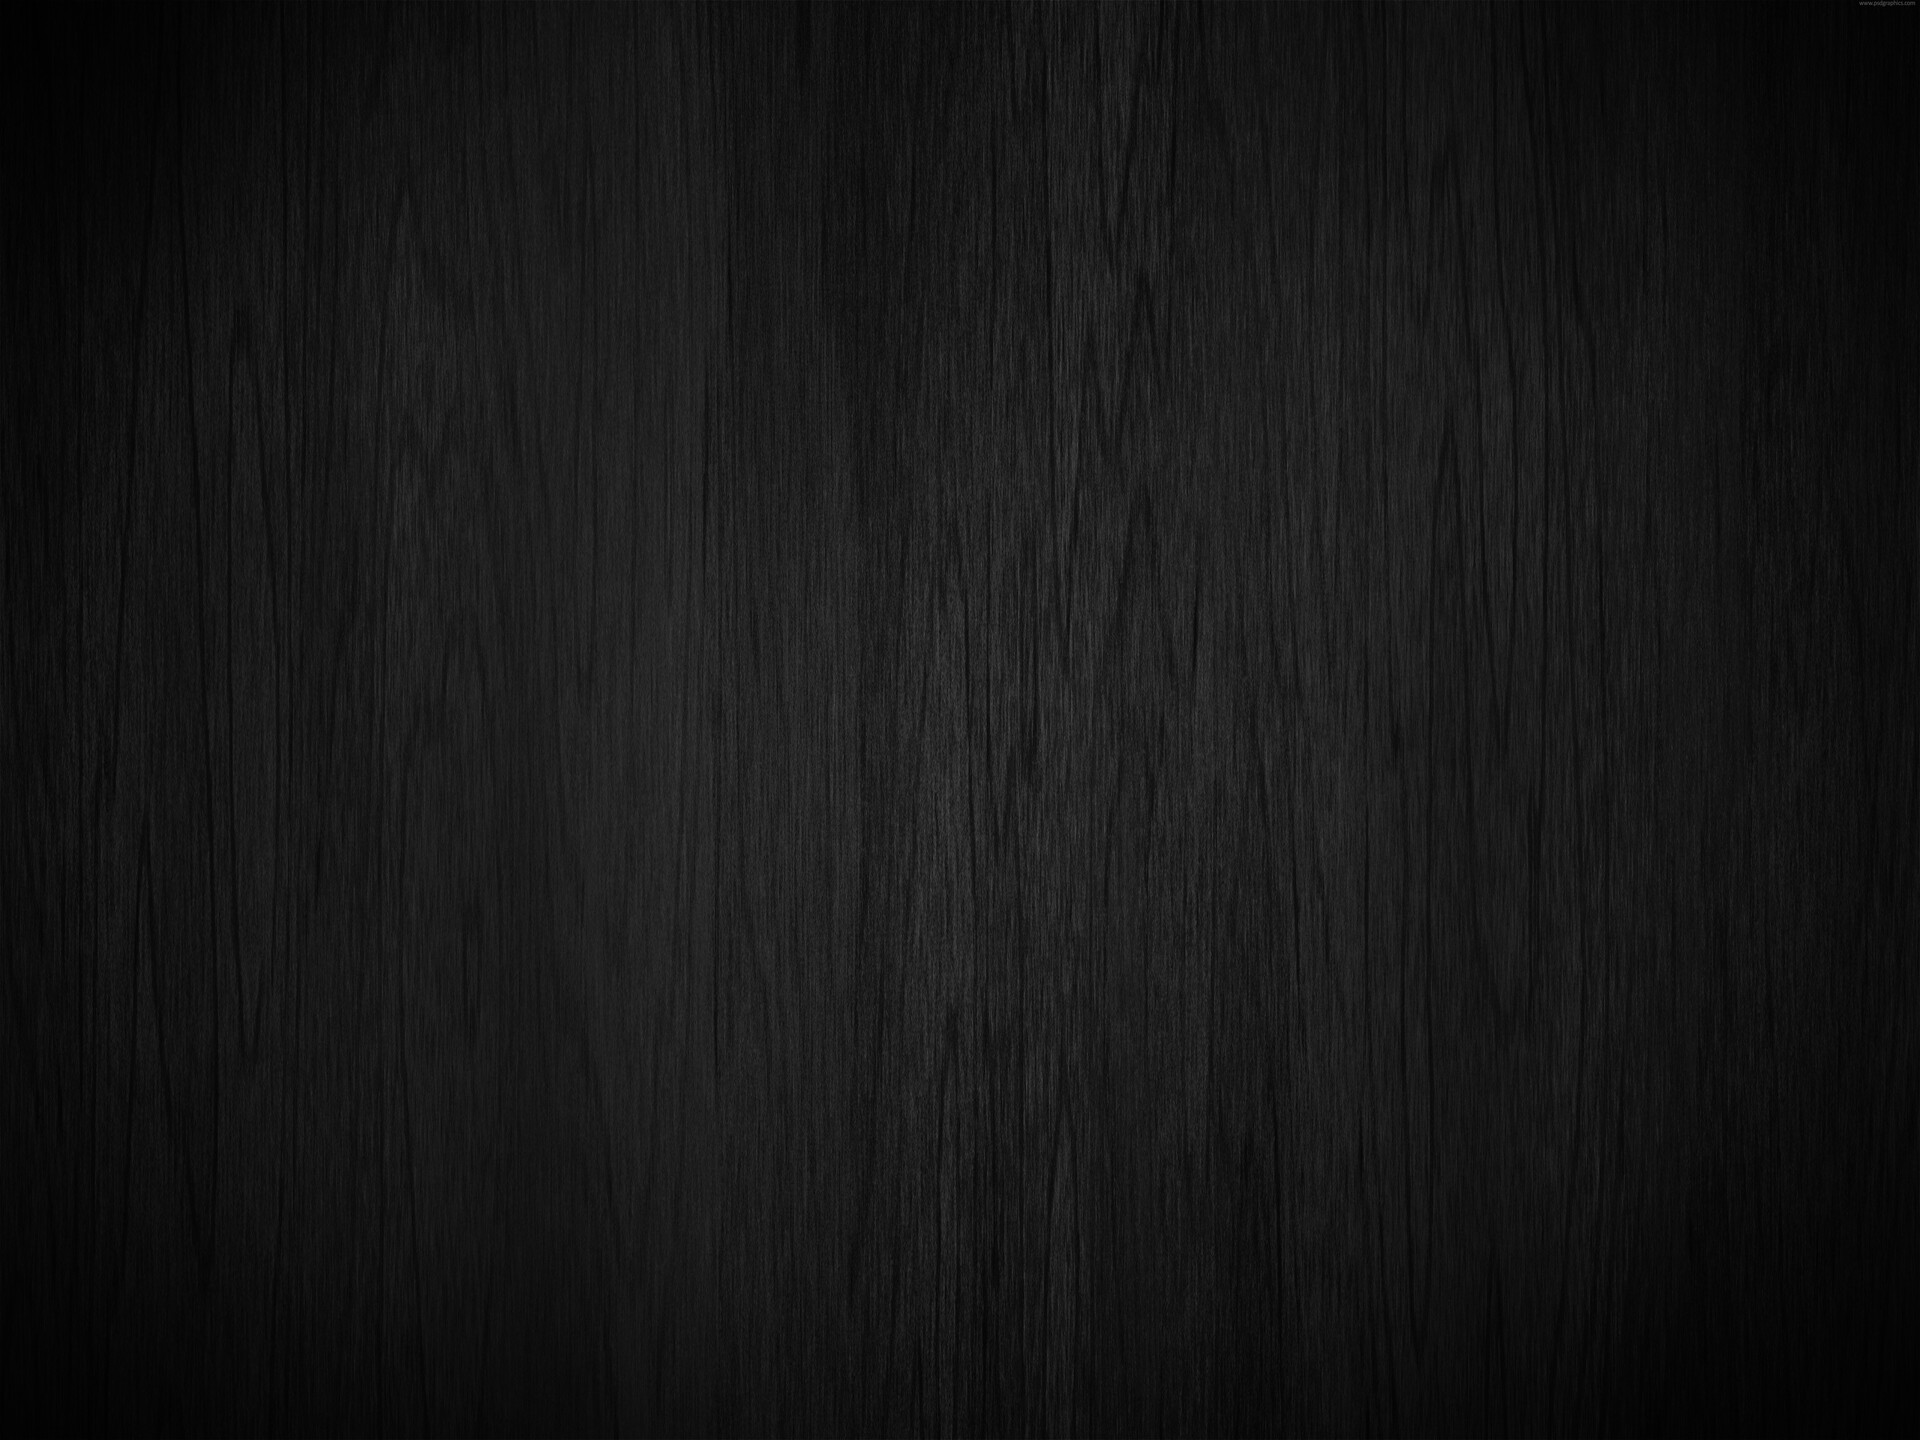 40 họa tiết gỗ đen là bảo bối không thể thiếu đối với bất kỳ người yêu thích thiết kế nội thất nào. Các kiểu vân gỗ độc đáo và tinh tế trên nền đen sẽ tạo ra một vẻ đẹp đầy thú vị và độc đáo cho bất kỳ sản phẩm nào. Hãy cùng khám phá 40 họa tiết gỗ đen để tìm thấy nguồn cảm hứng cho thiết kế của bạn.